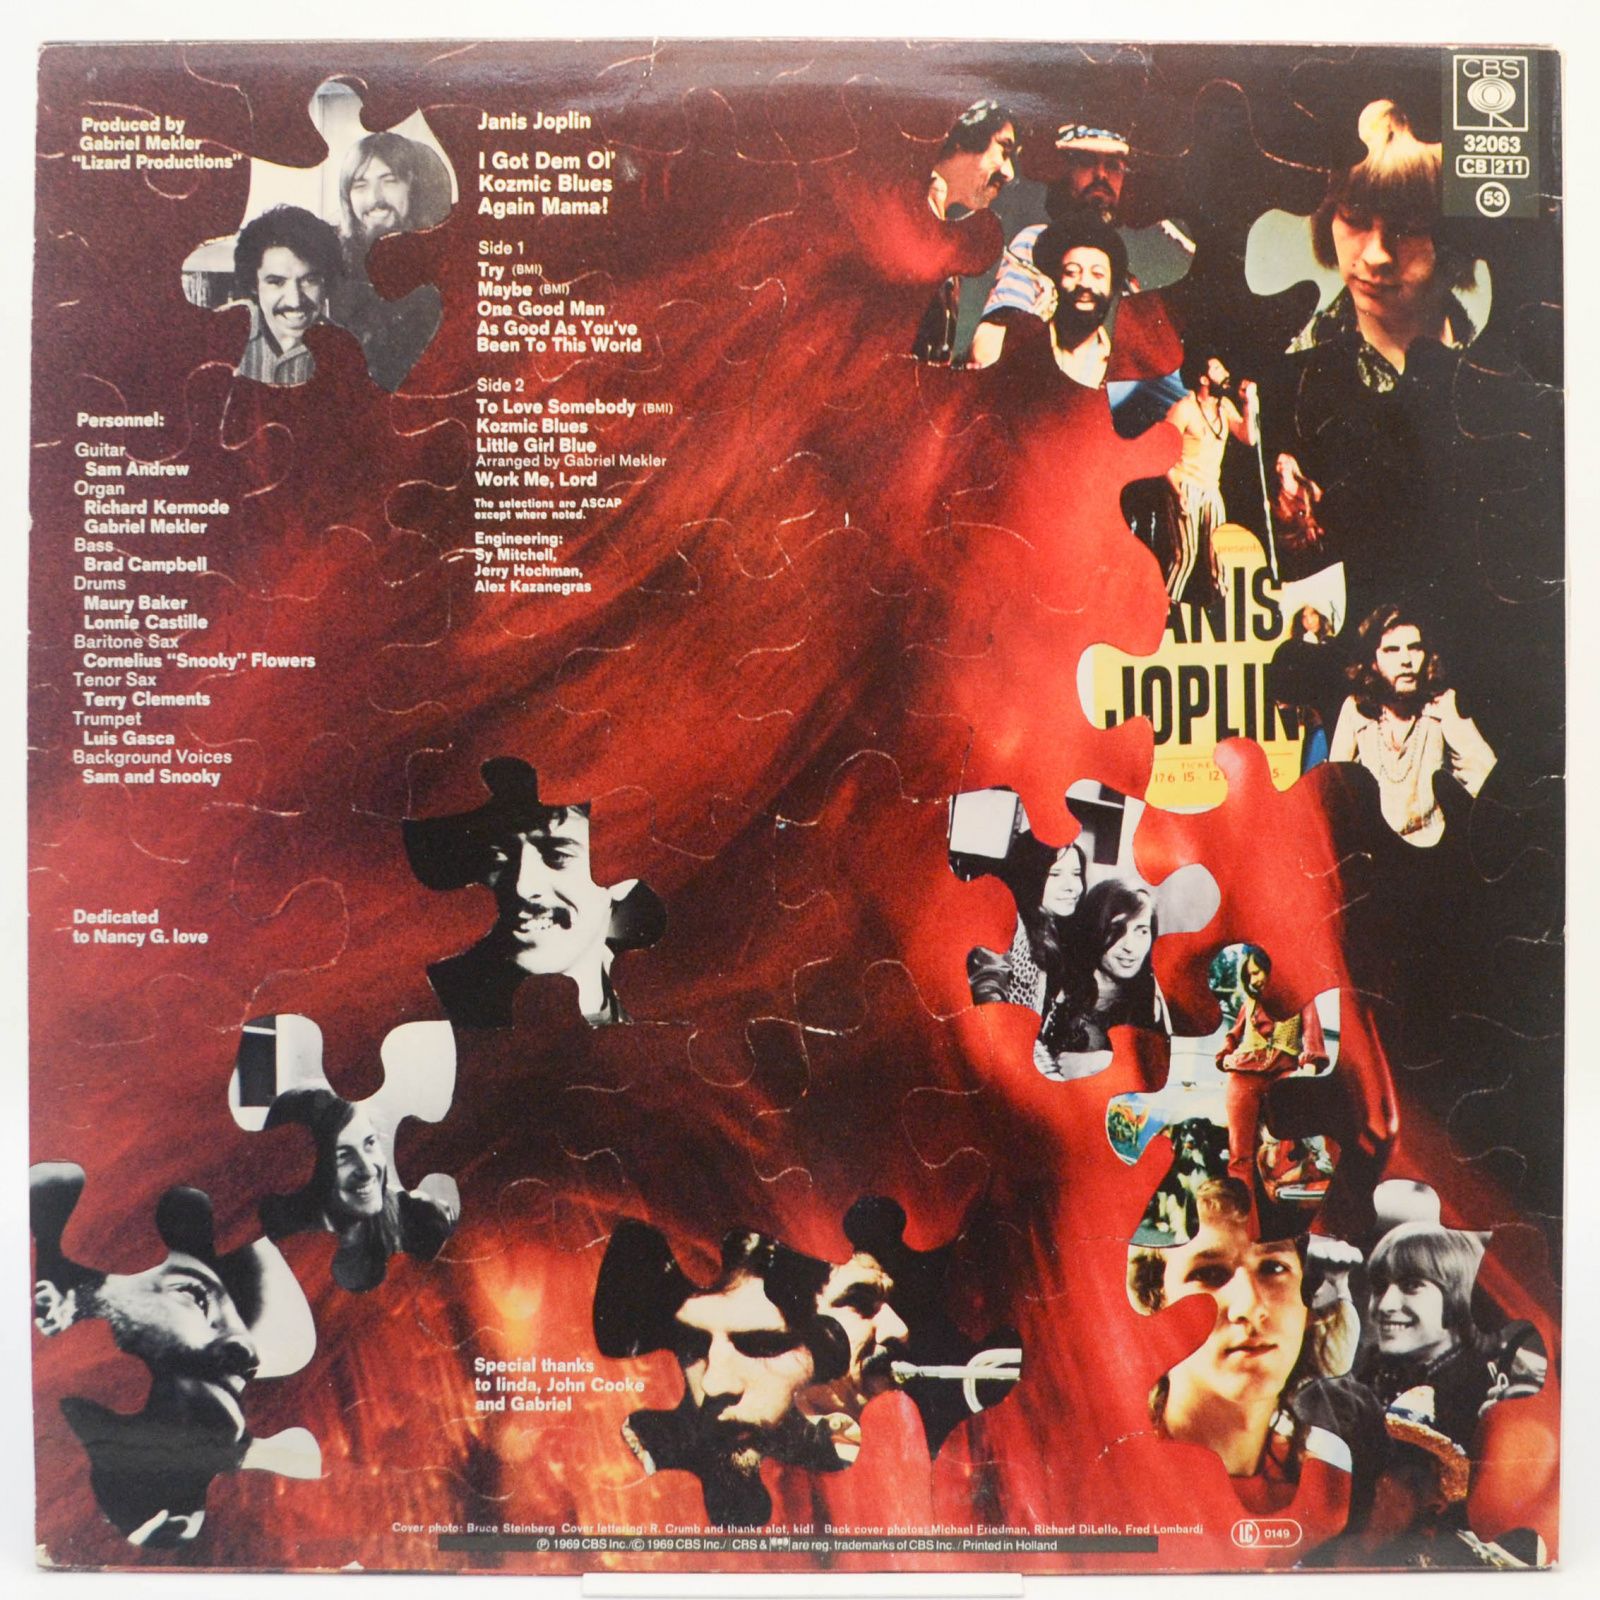 Janis Joplin — I Got Dem Ol' Kozmic Blues Again Mama!, 1969